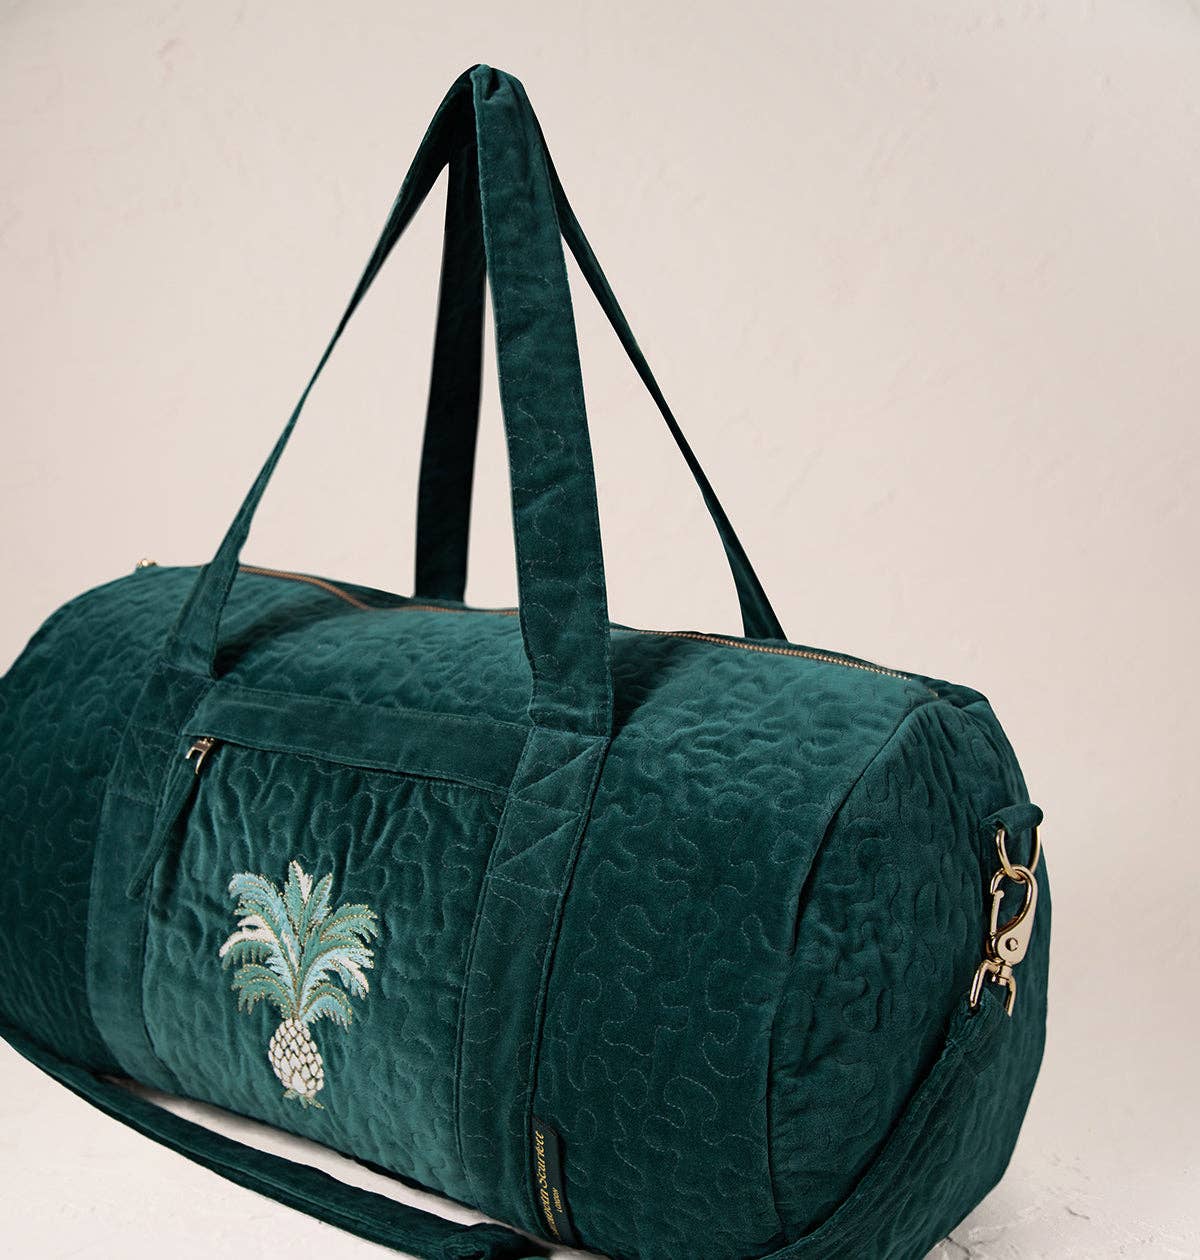 Elizabeth Scarlett Ltd - Pineapples Overnight Bag